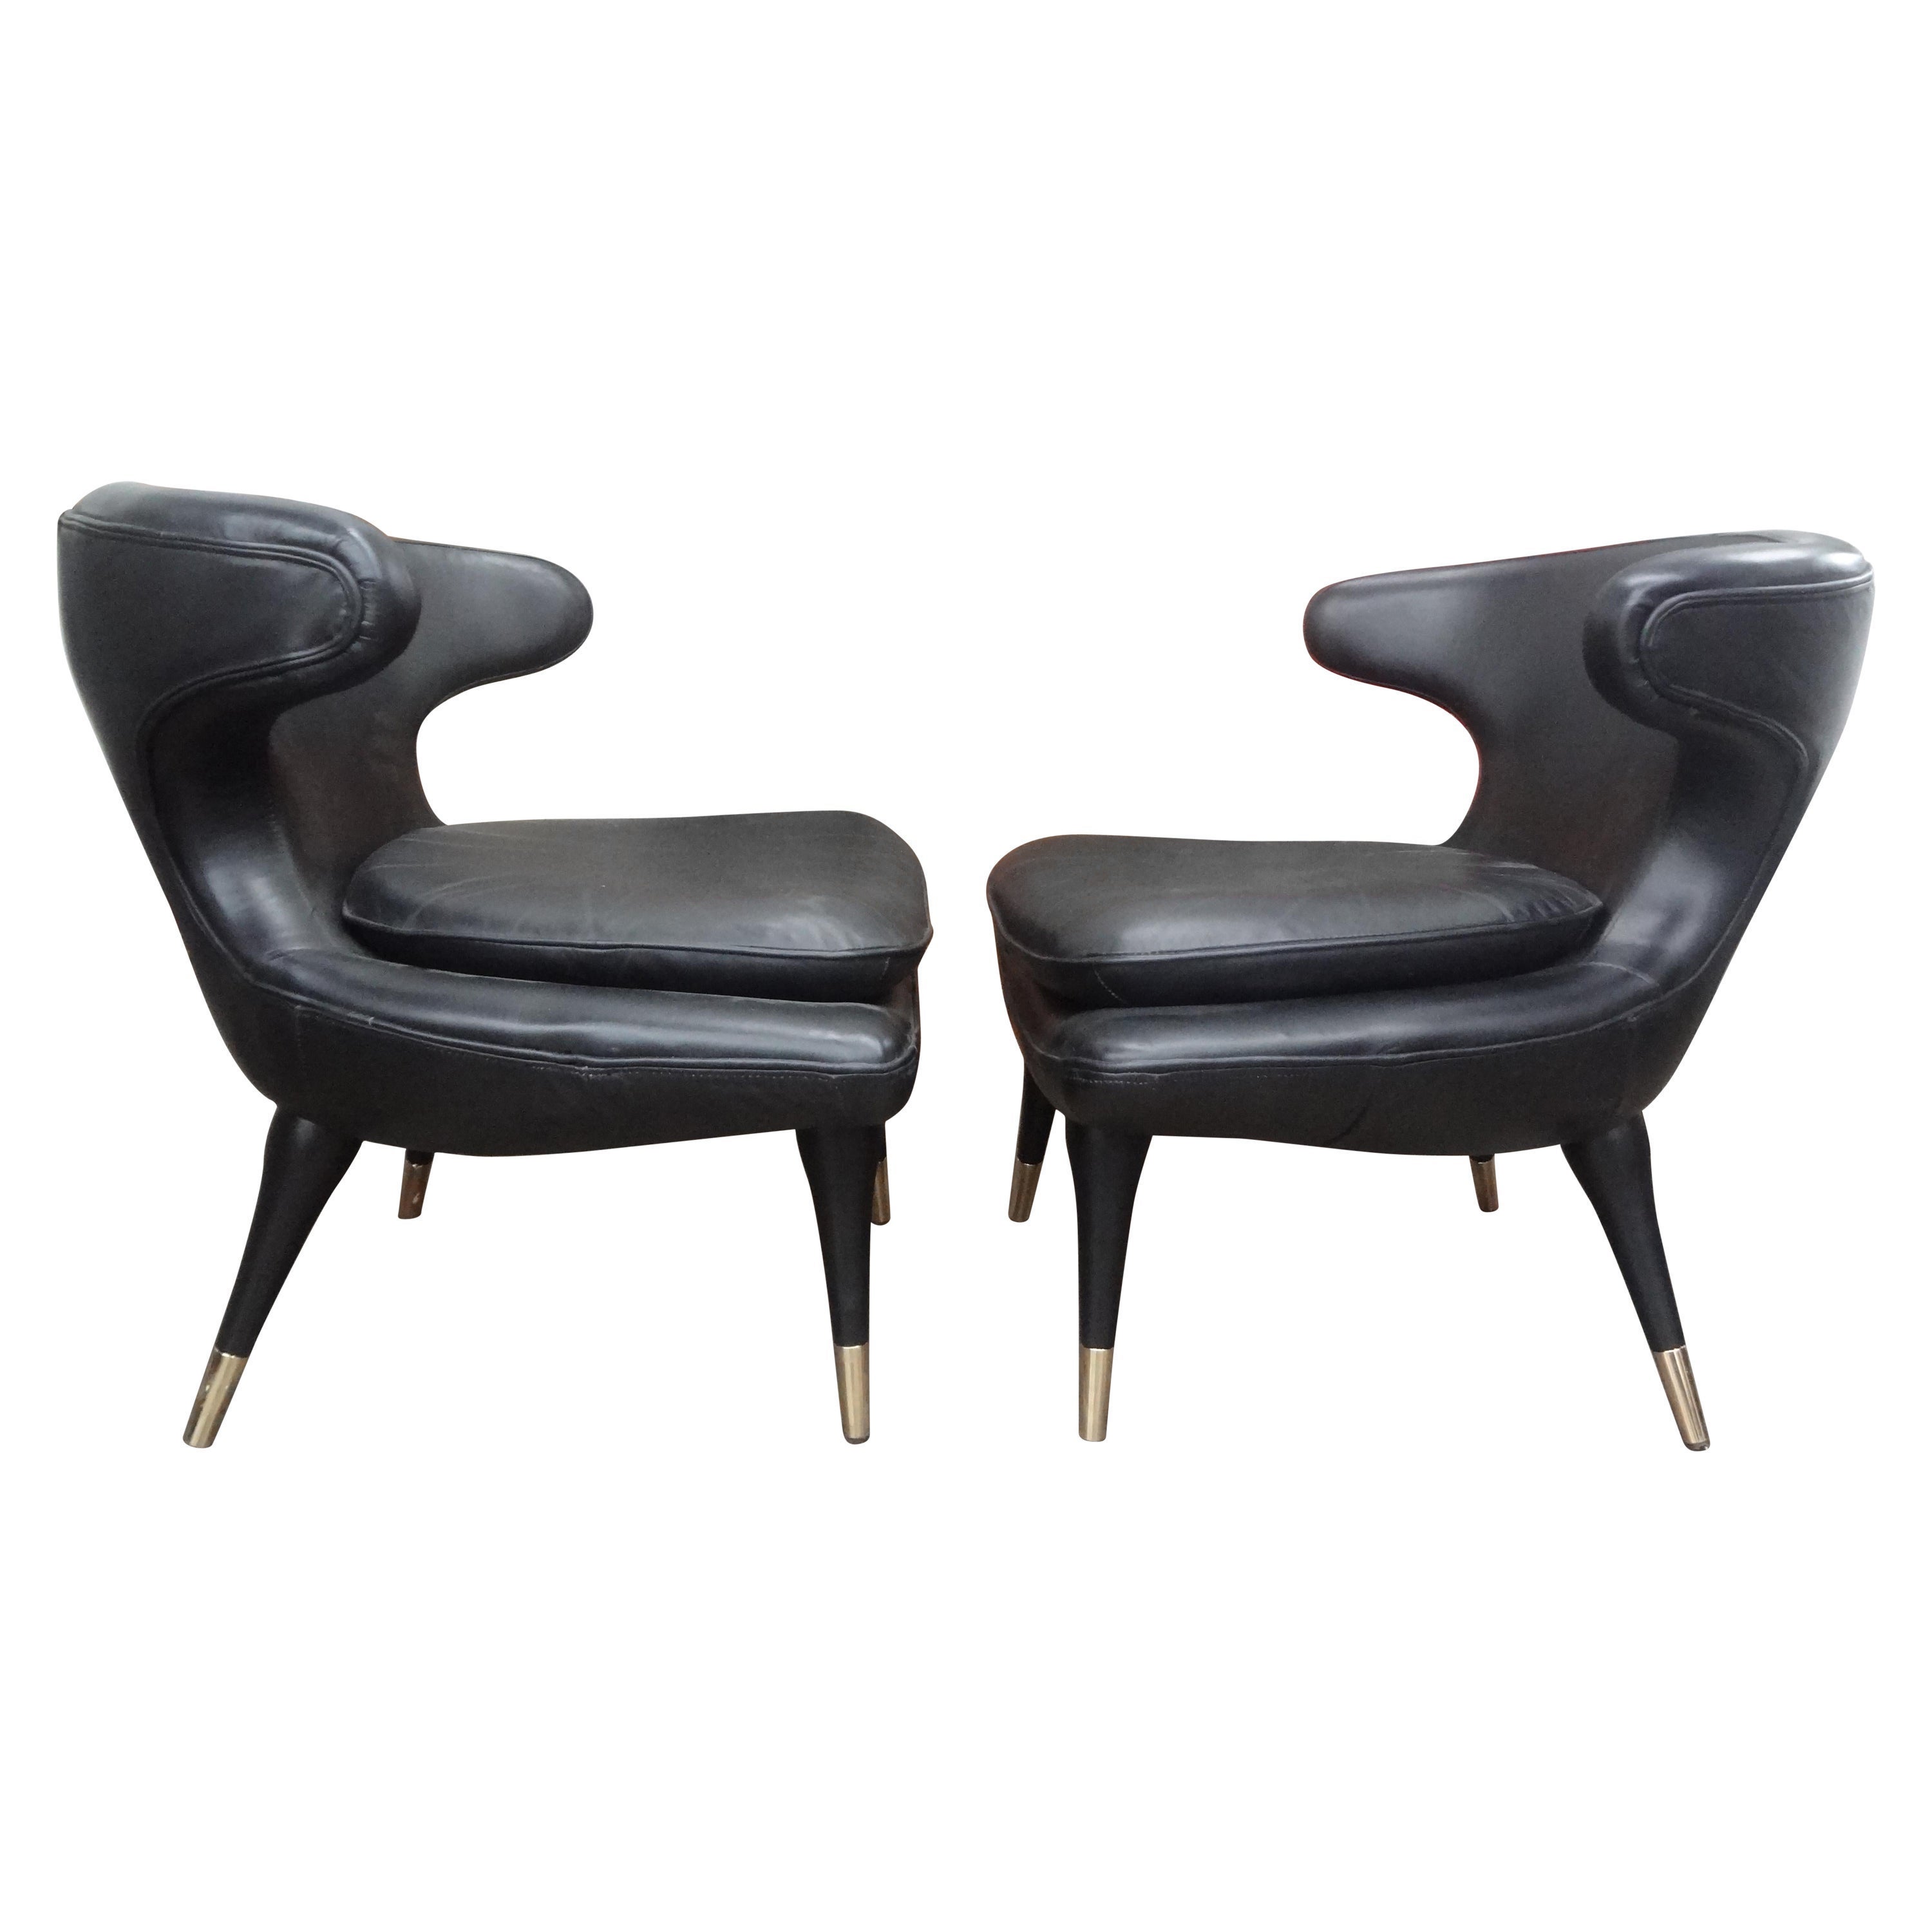 Paire de chaises modernes italiennes à dossier incurvé tapissées de cuir noir